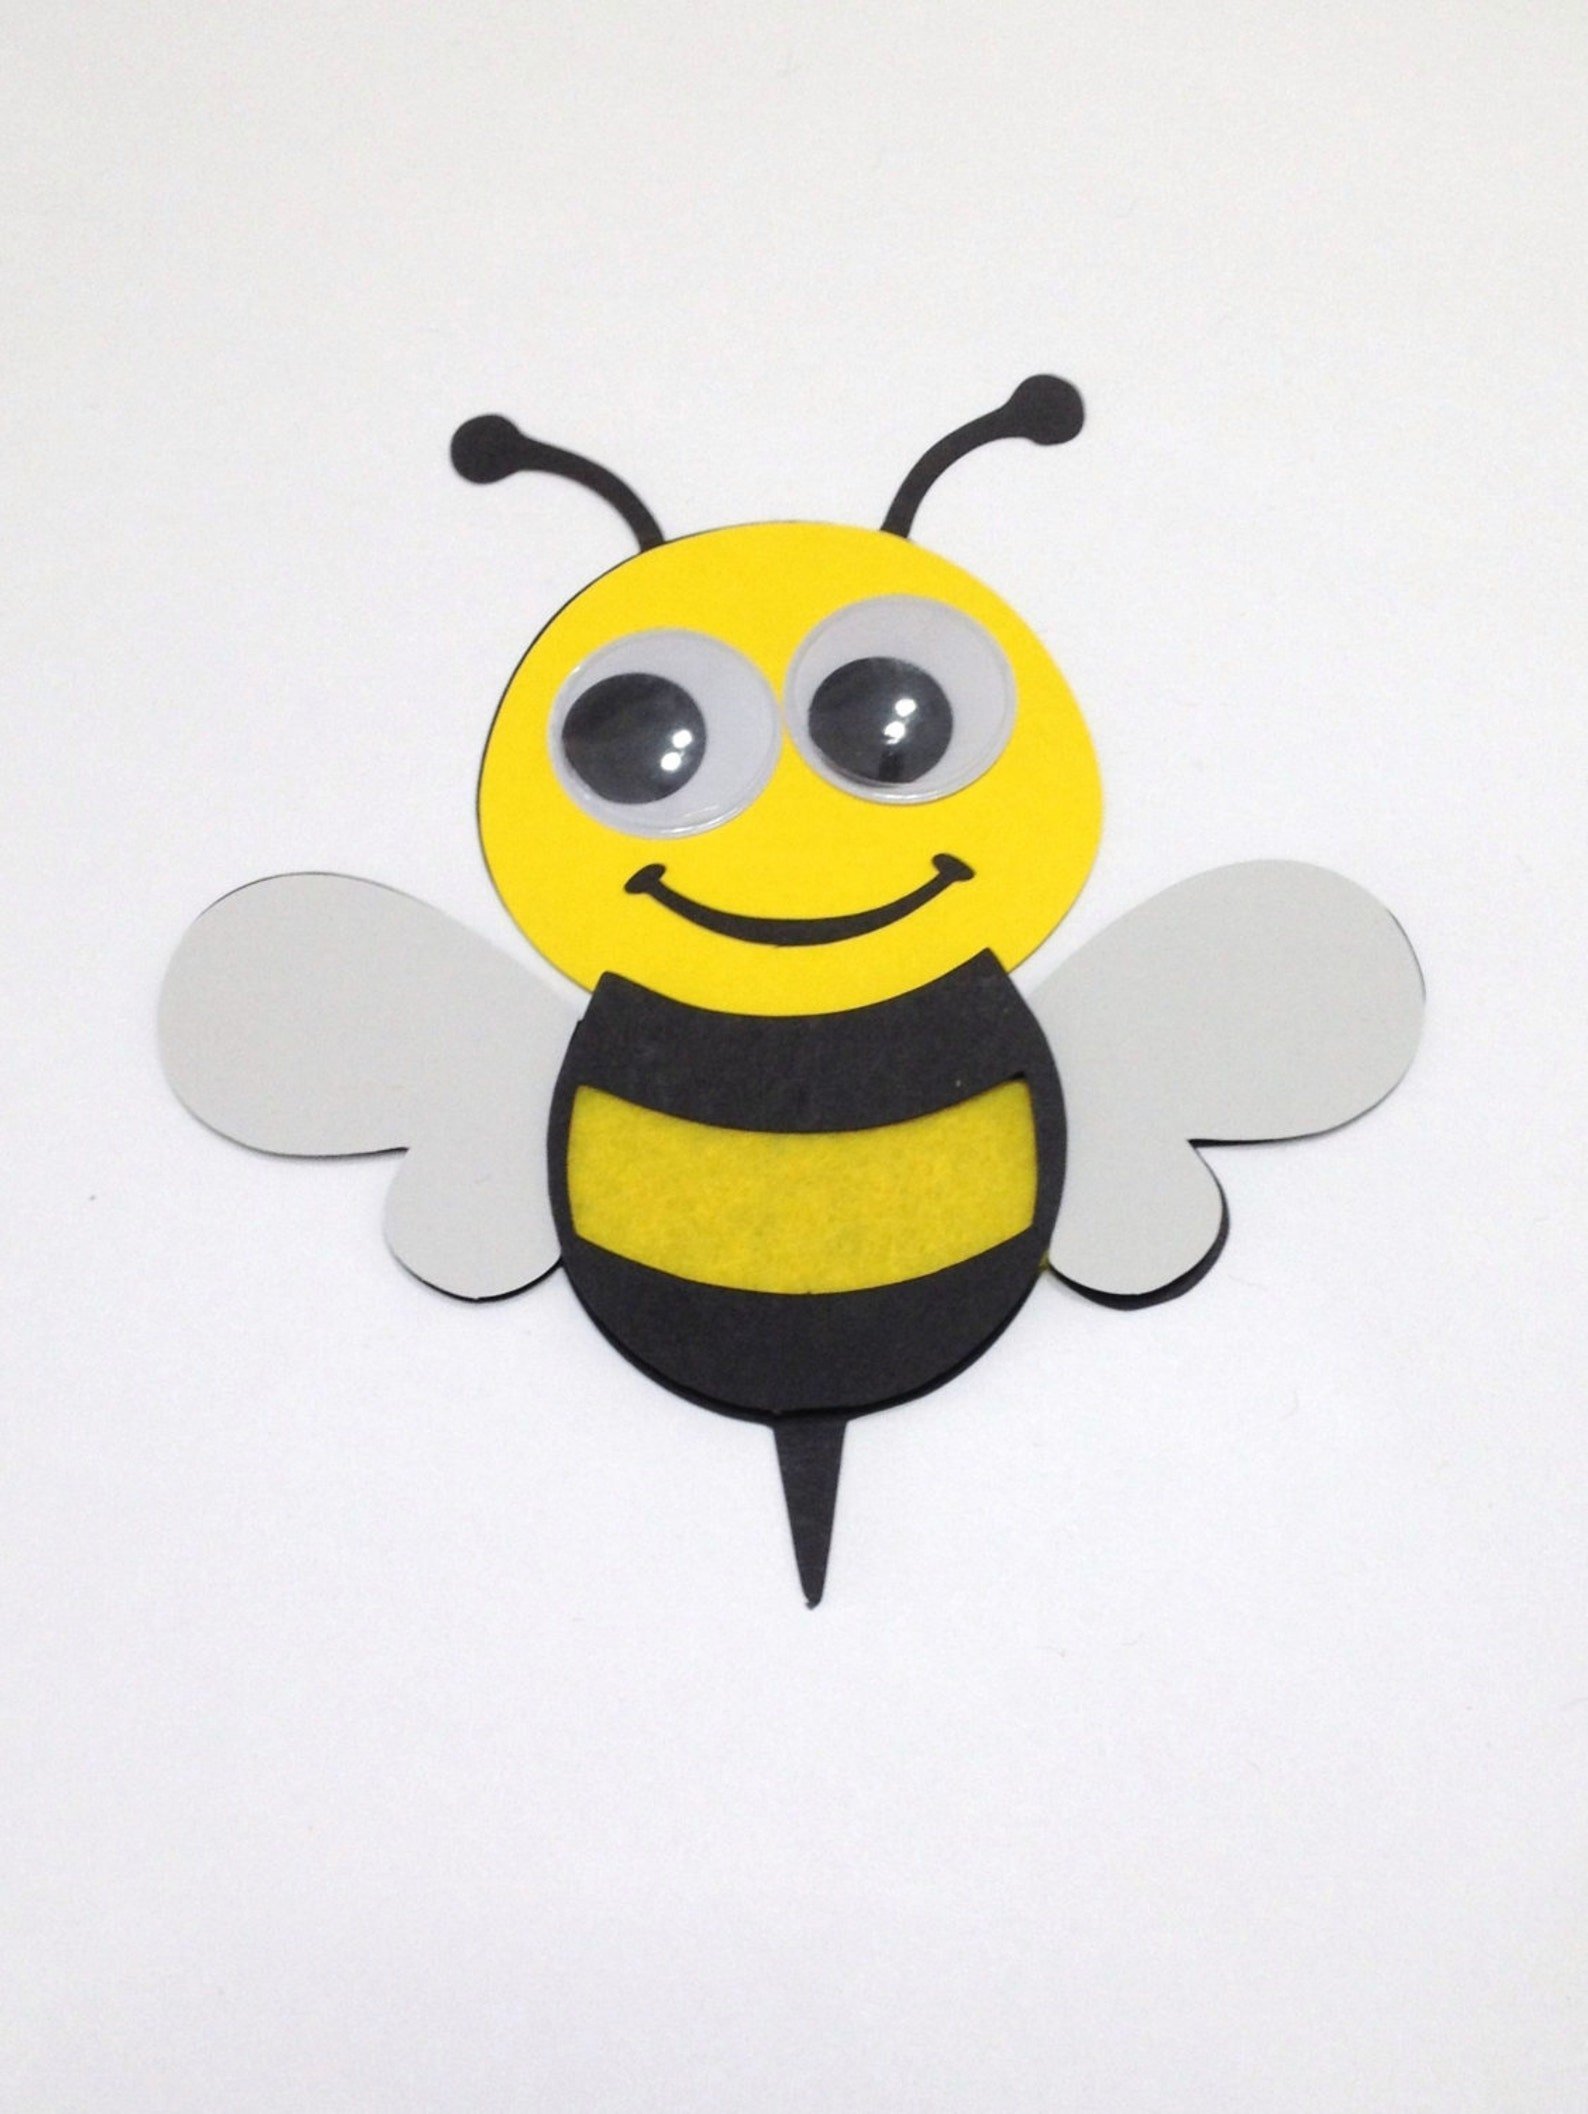 Поделки пчелка из картона идеи по изготовлению своими руками фото